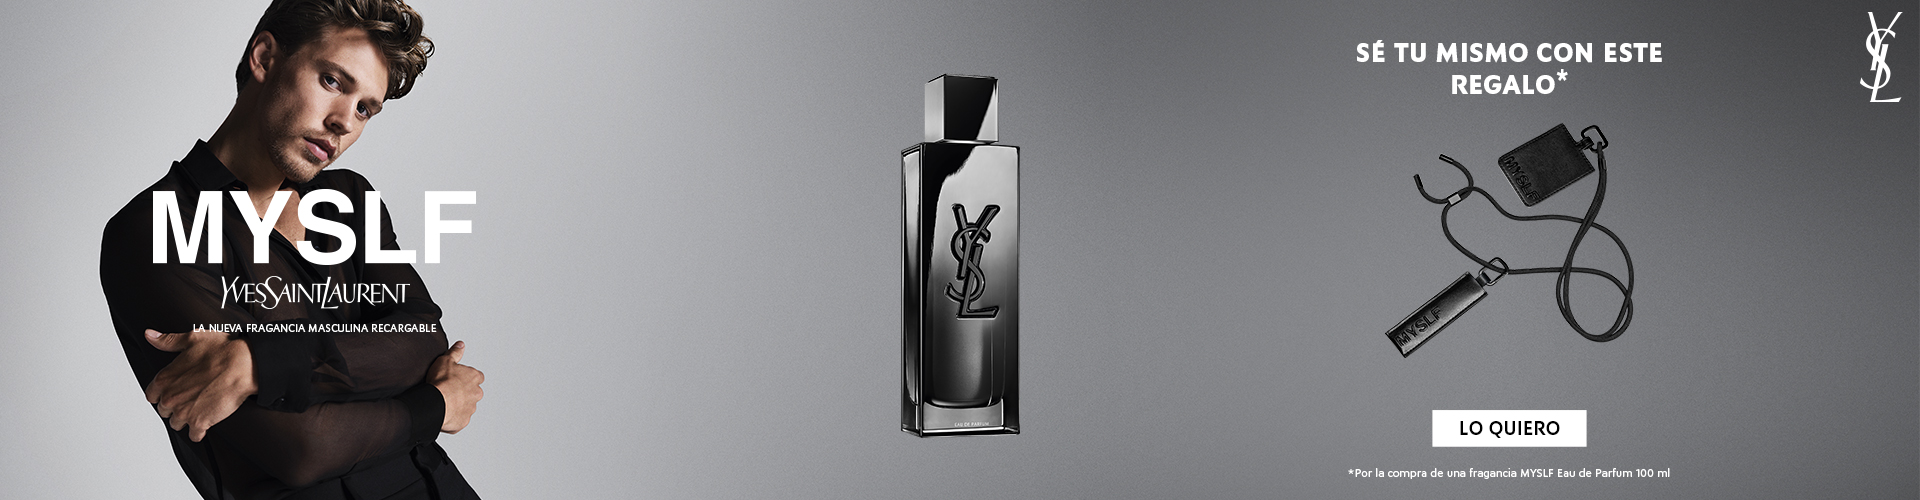 YSL MYSLF | Consigue el Nuevo Perfume de Hombre con Regalo | Prieto.es